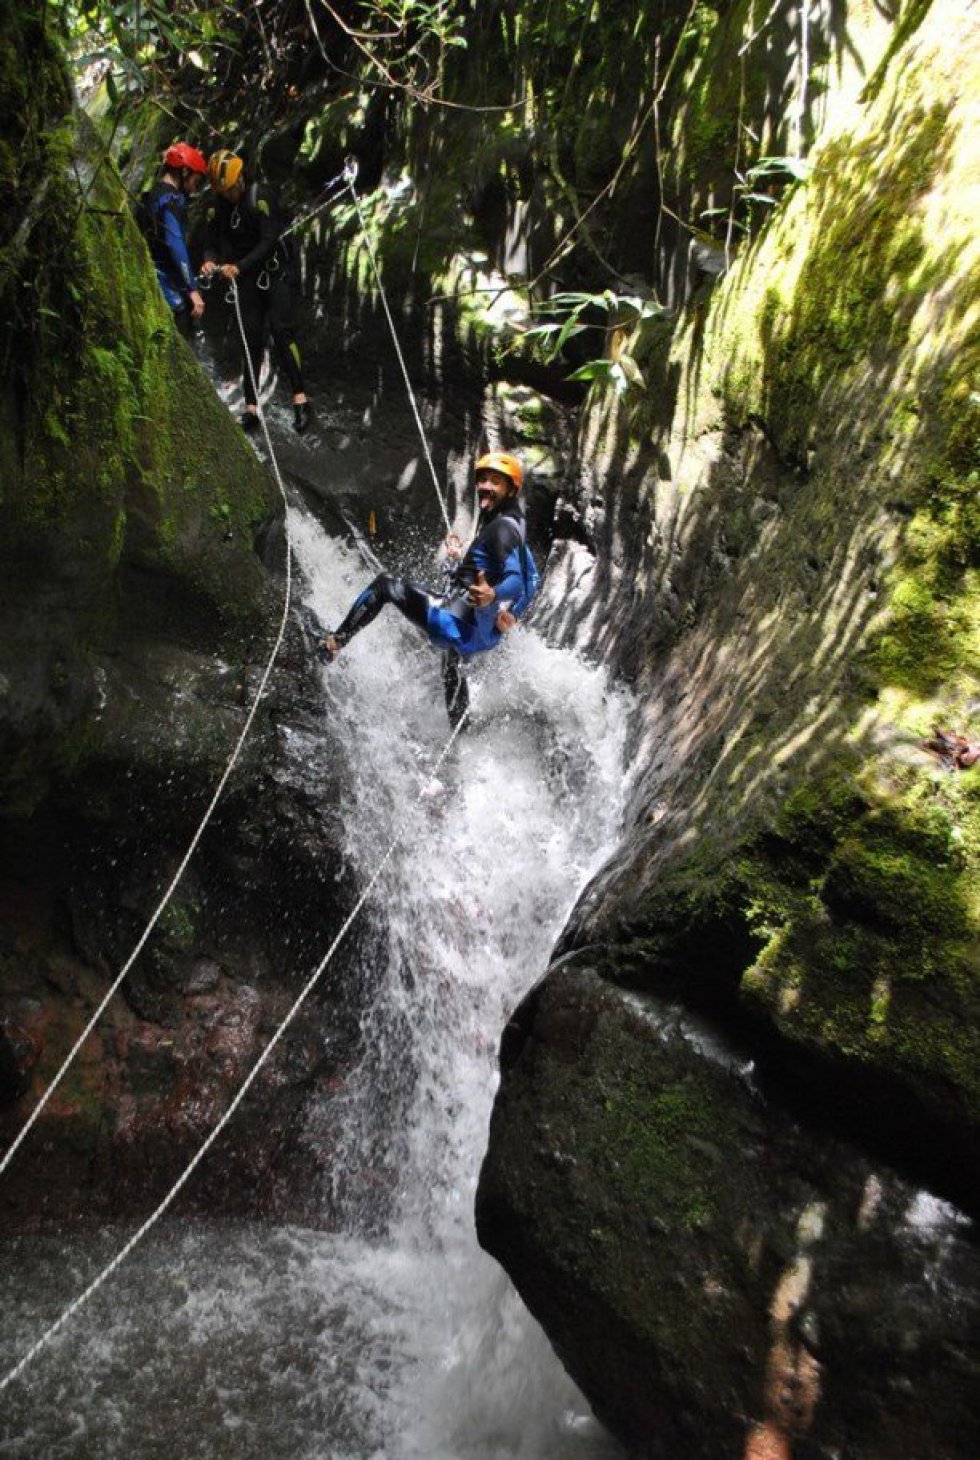 Puntzan Canopy - Outdoor Adventures Banos Ecuador